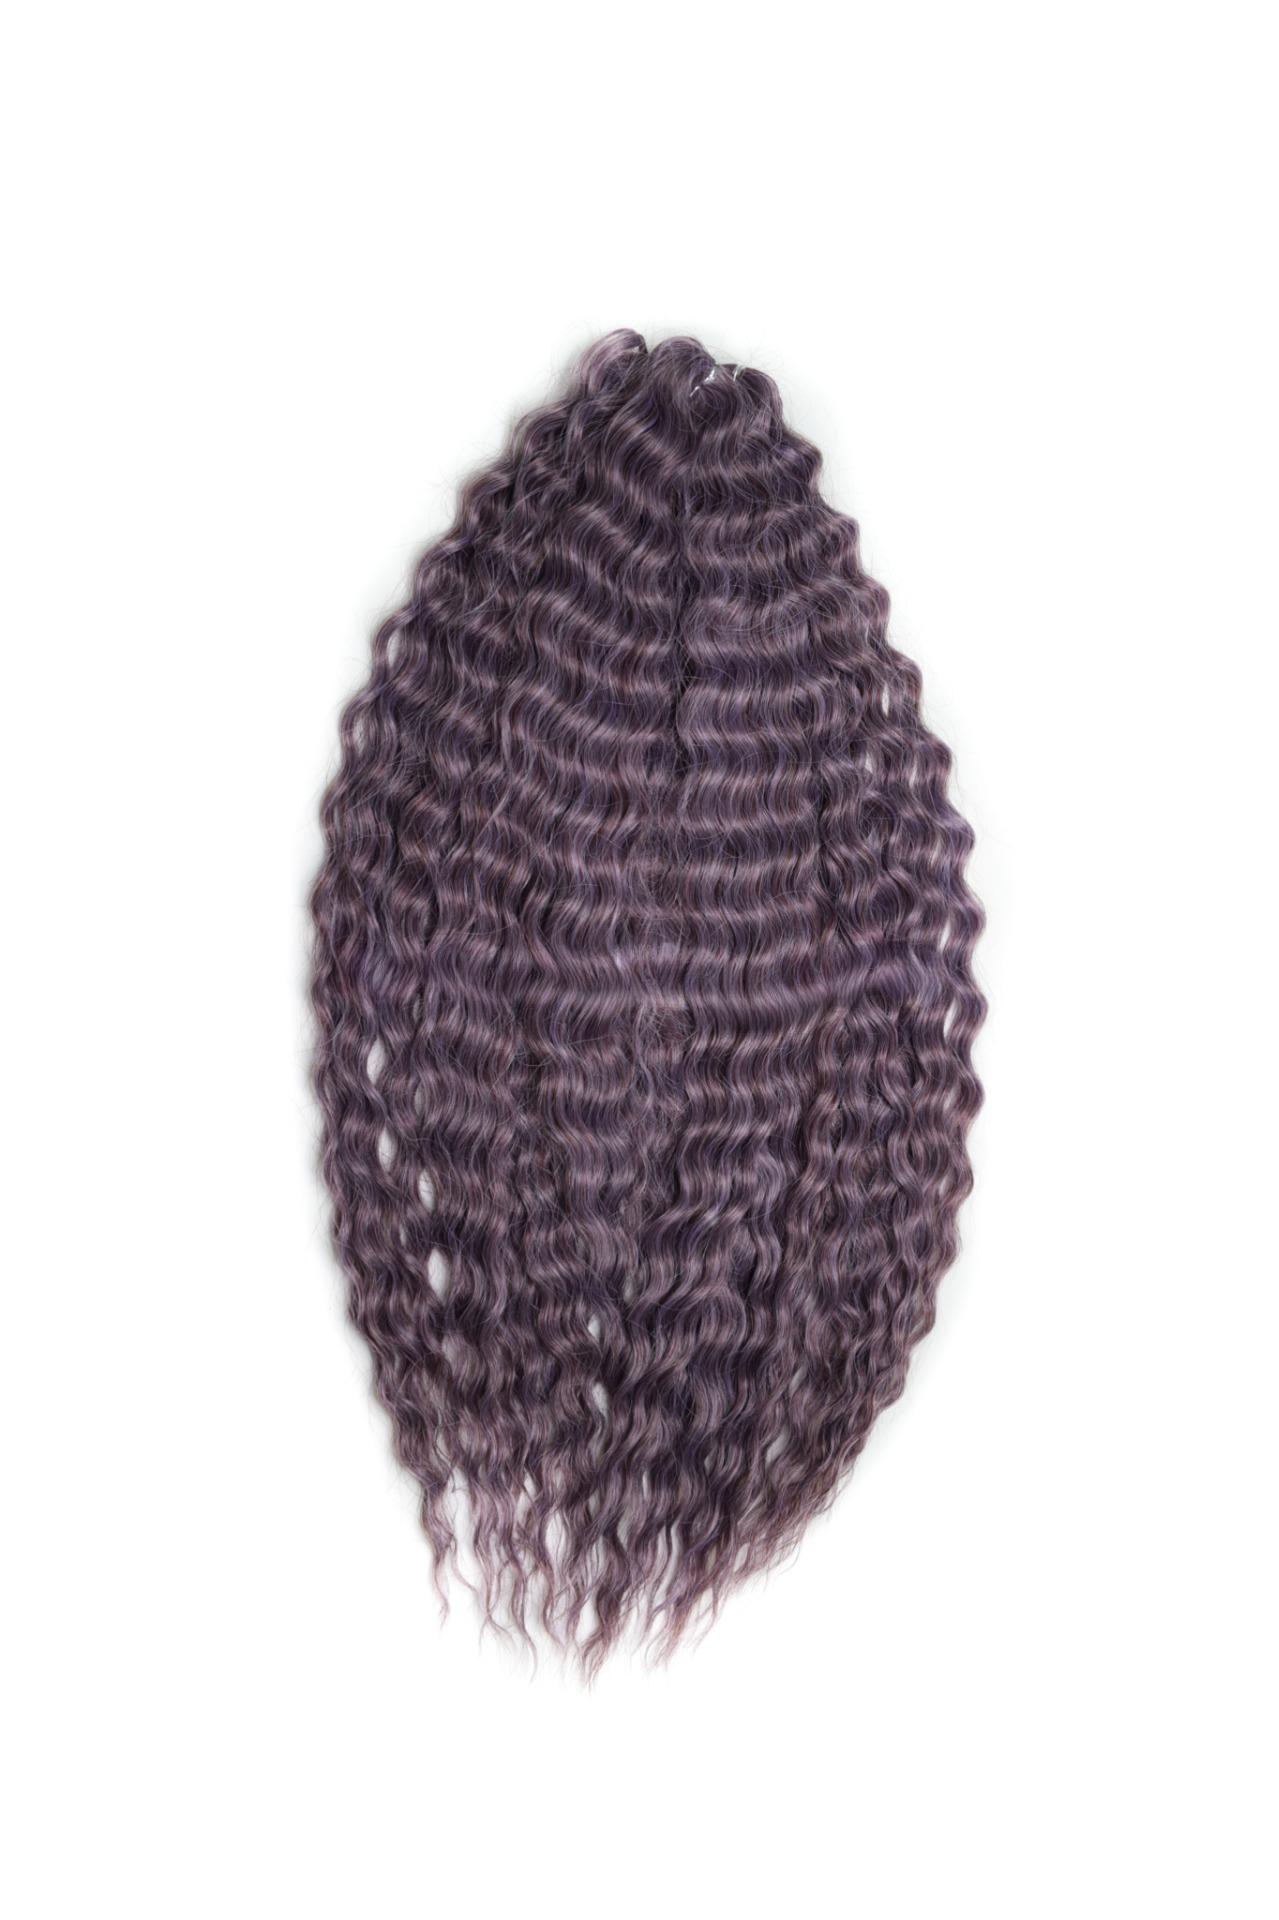 Афрокудри для плетения волос Ariel Ариэль цвет PURPLE GREY длина 60см вес 300г афрокудри для плетения волос ariel ариэль violet длина 60см вес 300г